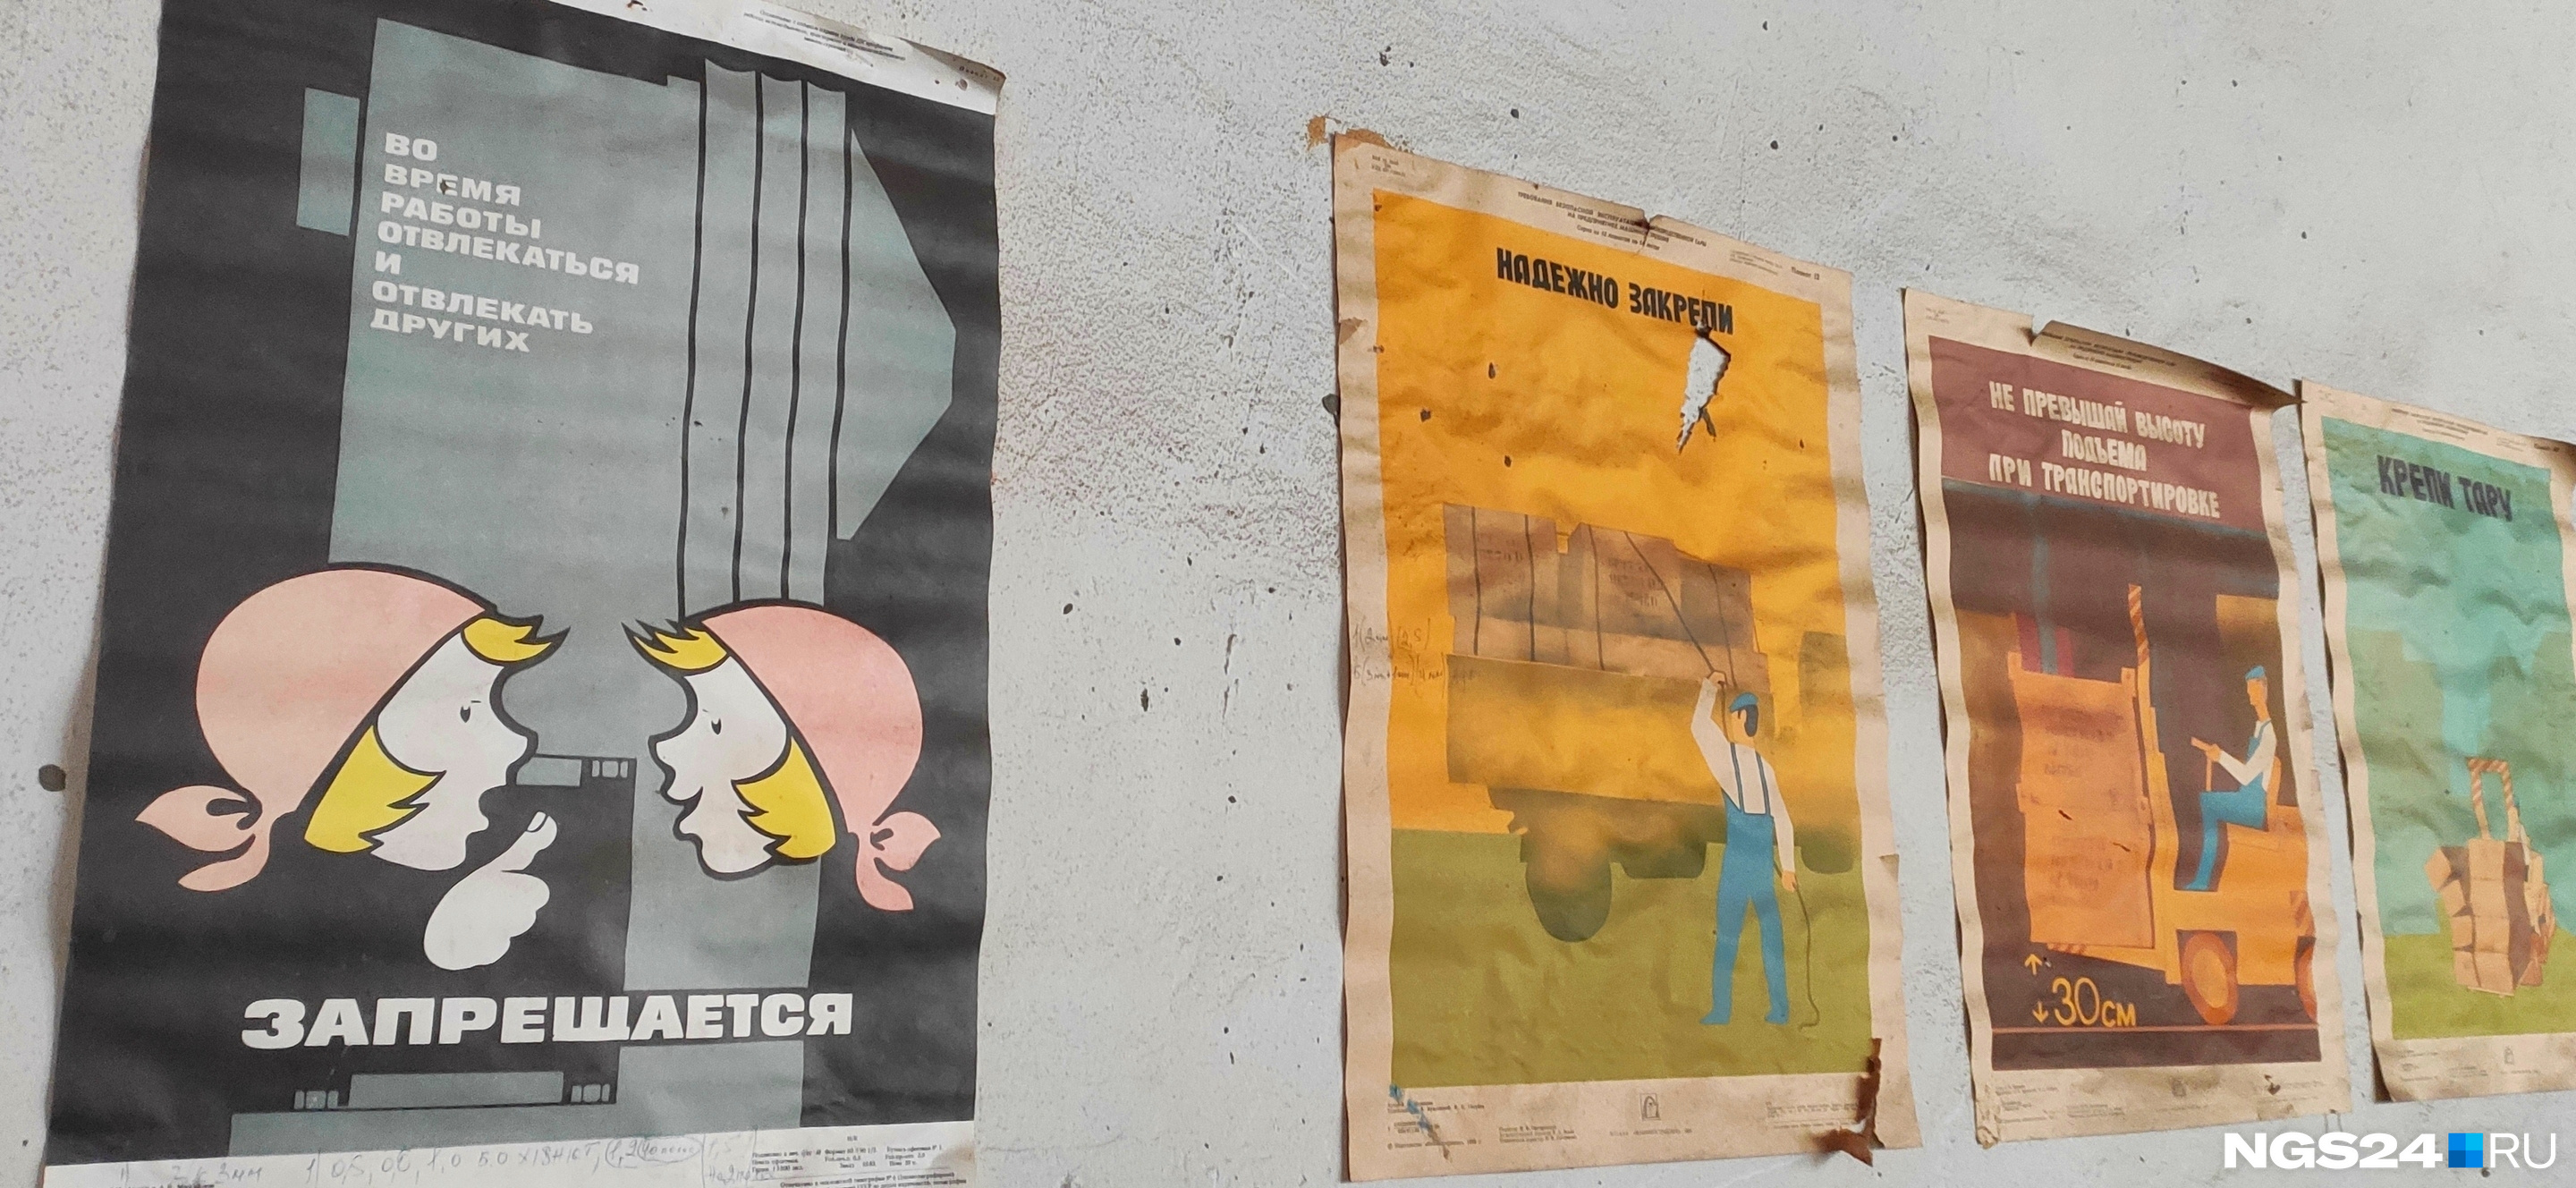 Плакаты о безопасности производства — отдельный вид советского искусства